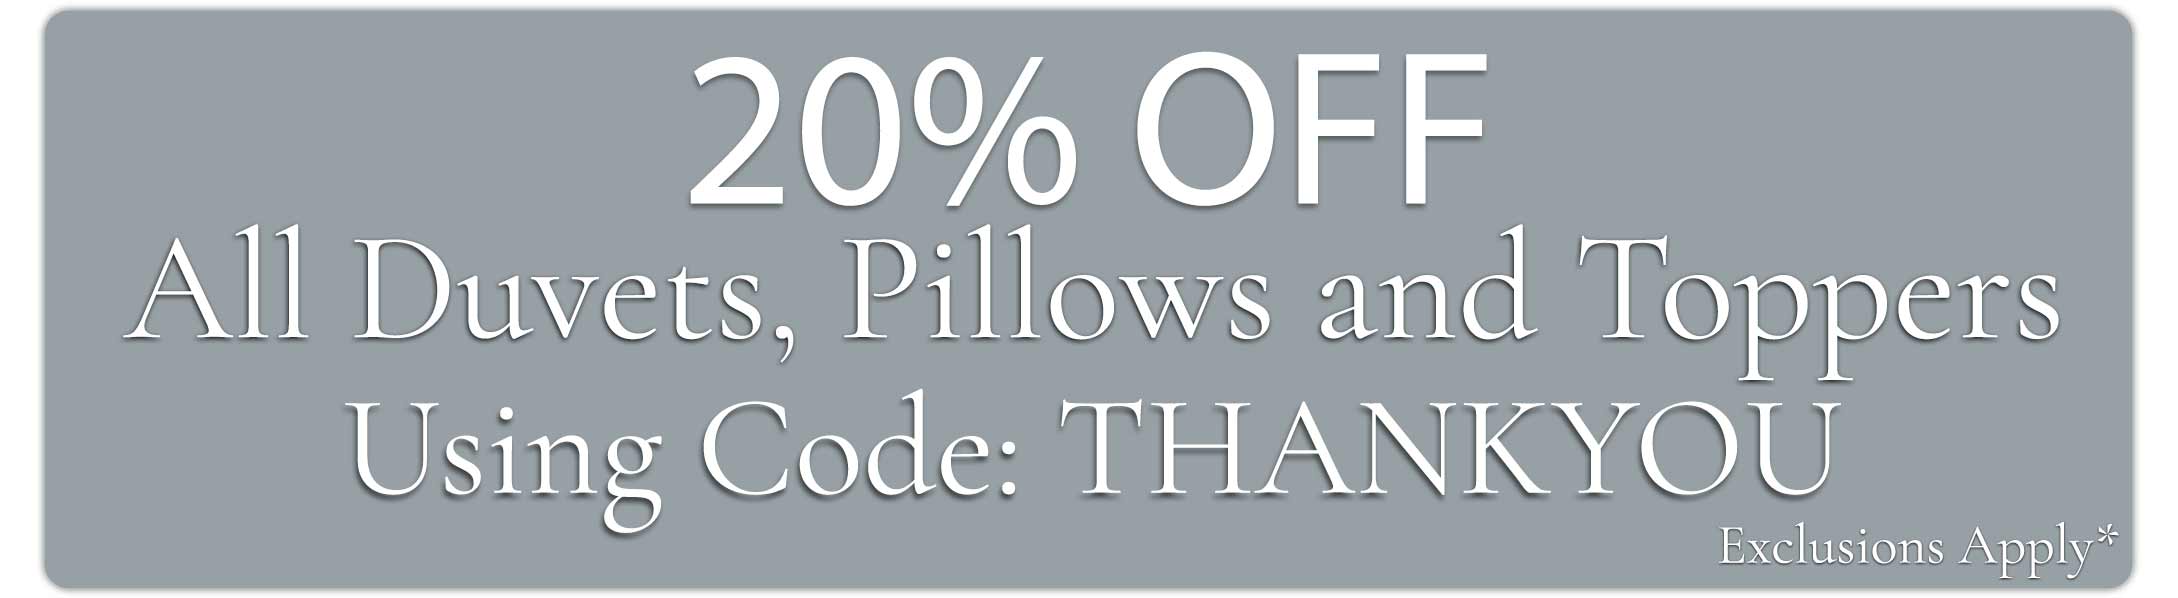 20% off our all woollen bedding mattress comforter banner.